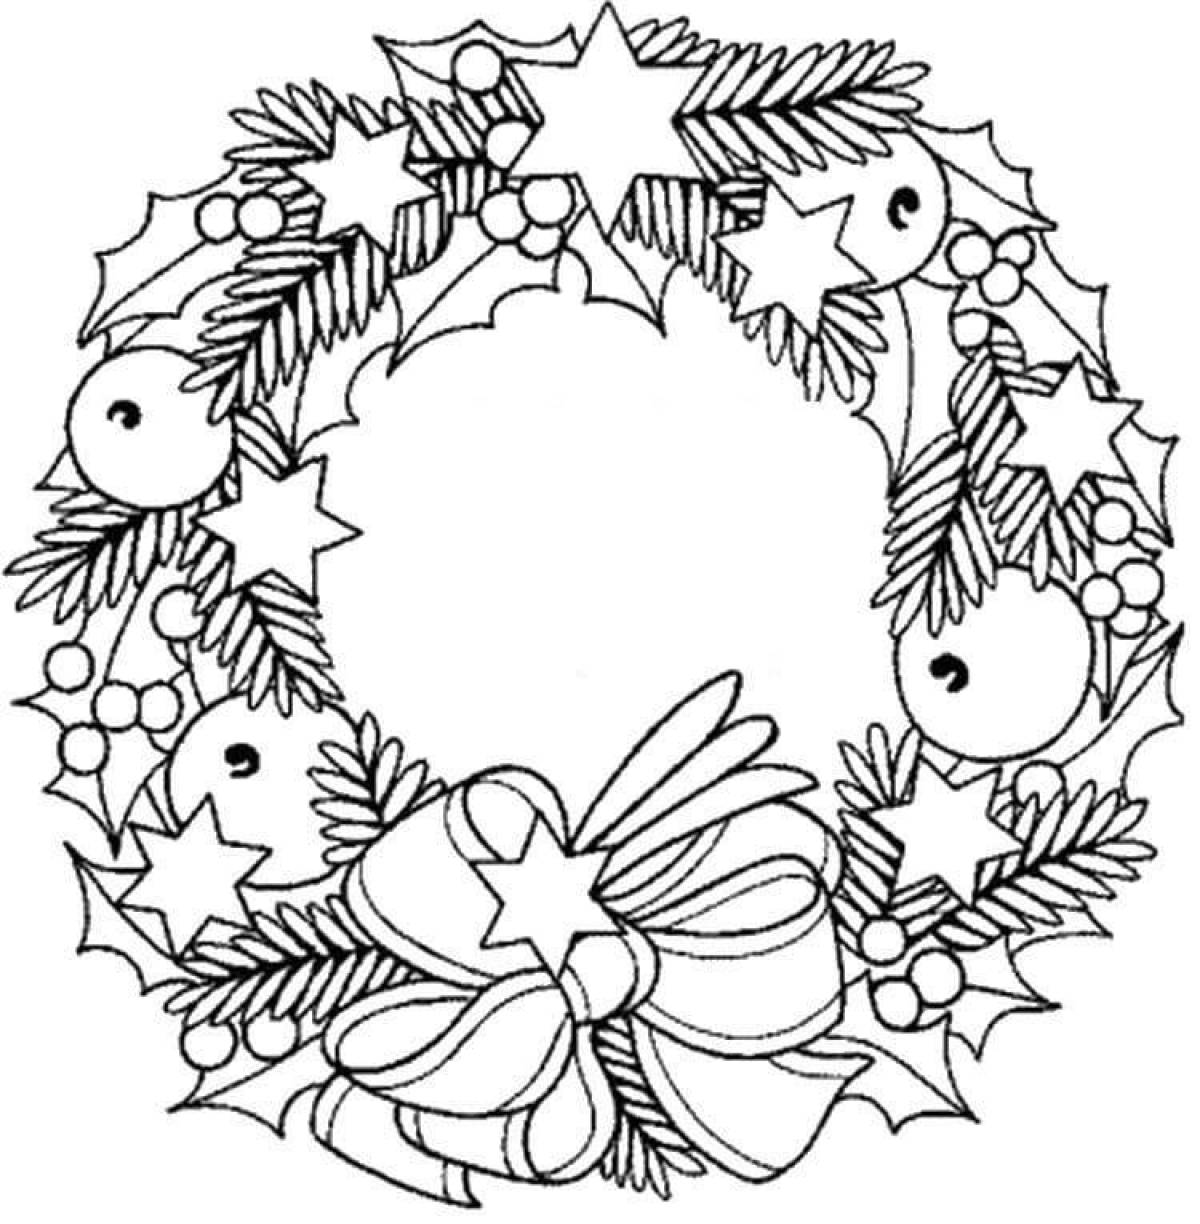 Adorable Christmas wreath coloring book